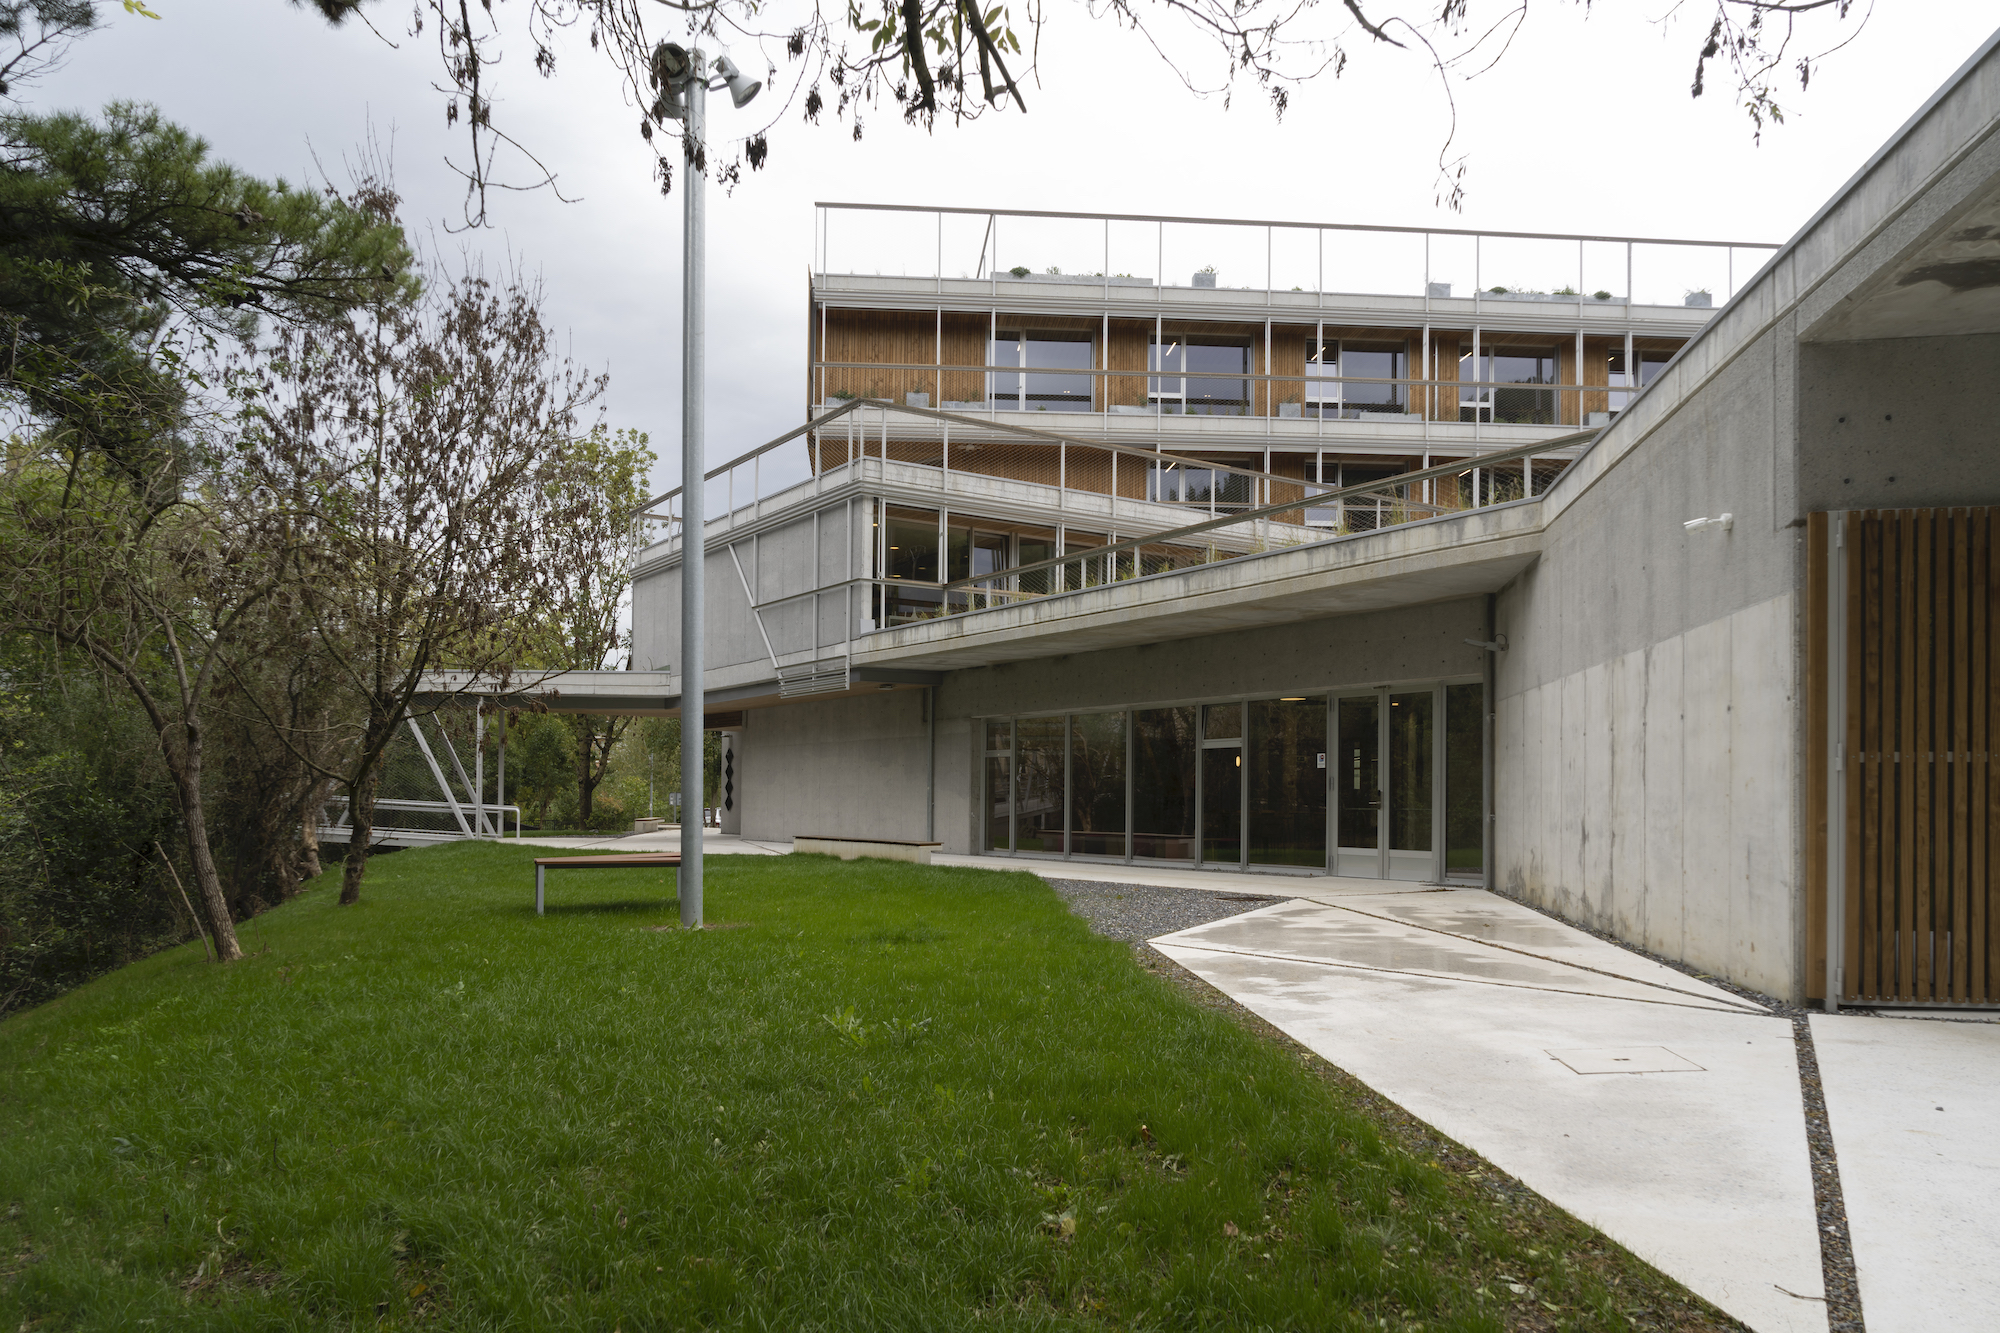 Reforma y ampliación del edificio Dorleta del campus de Eskoriatza de Mondragon Unibertsitatea